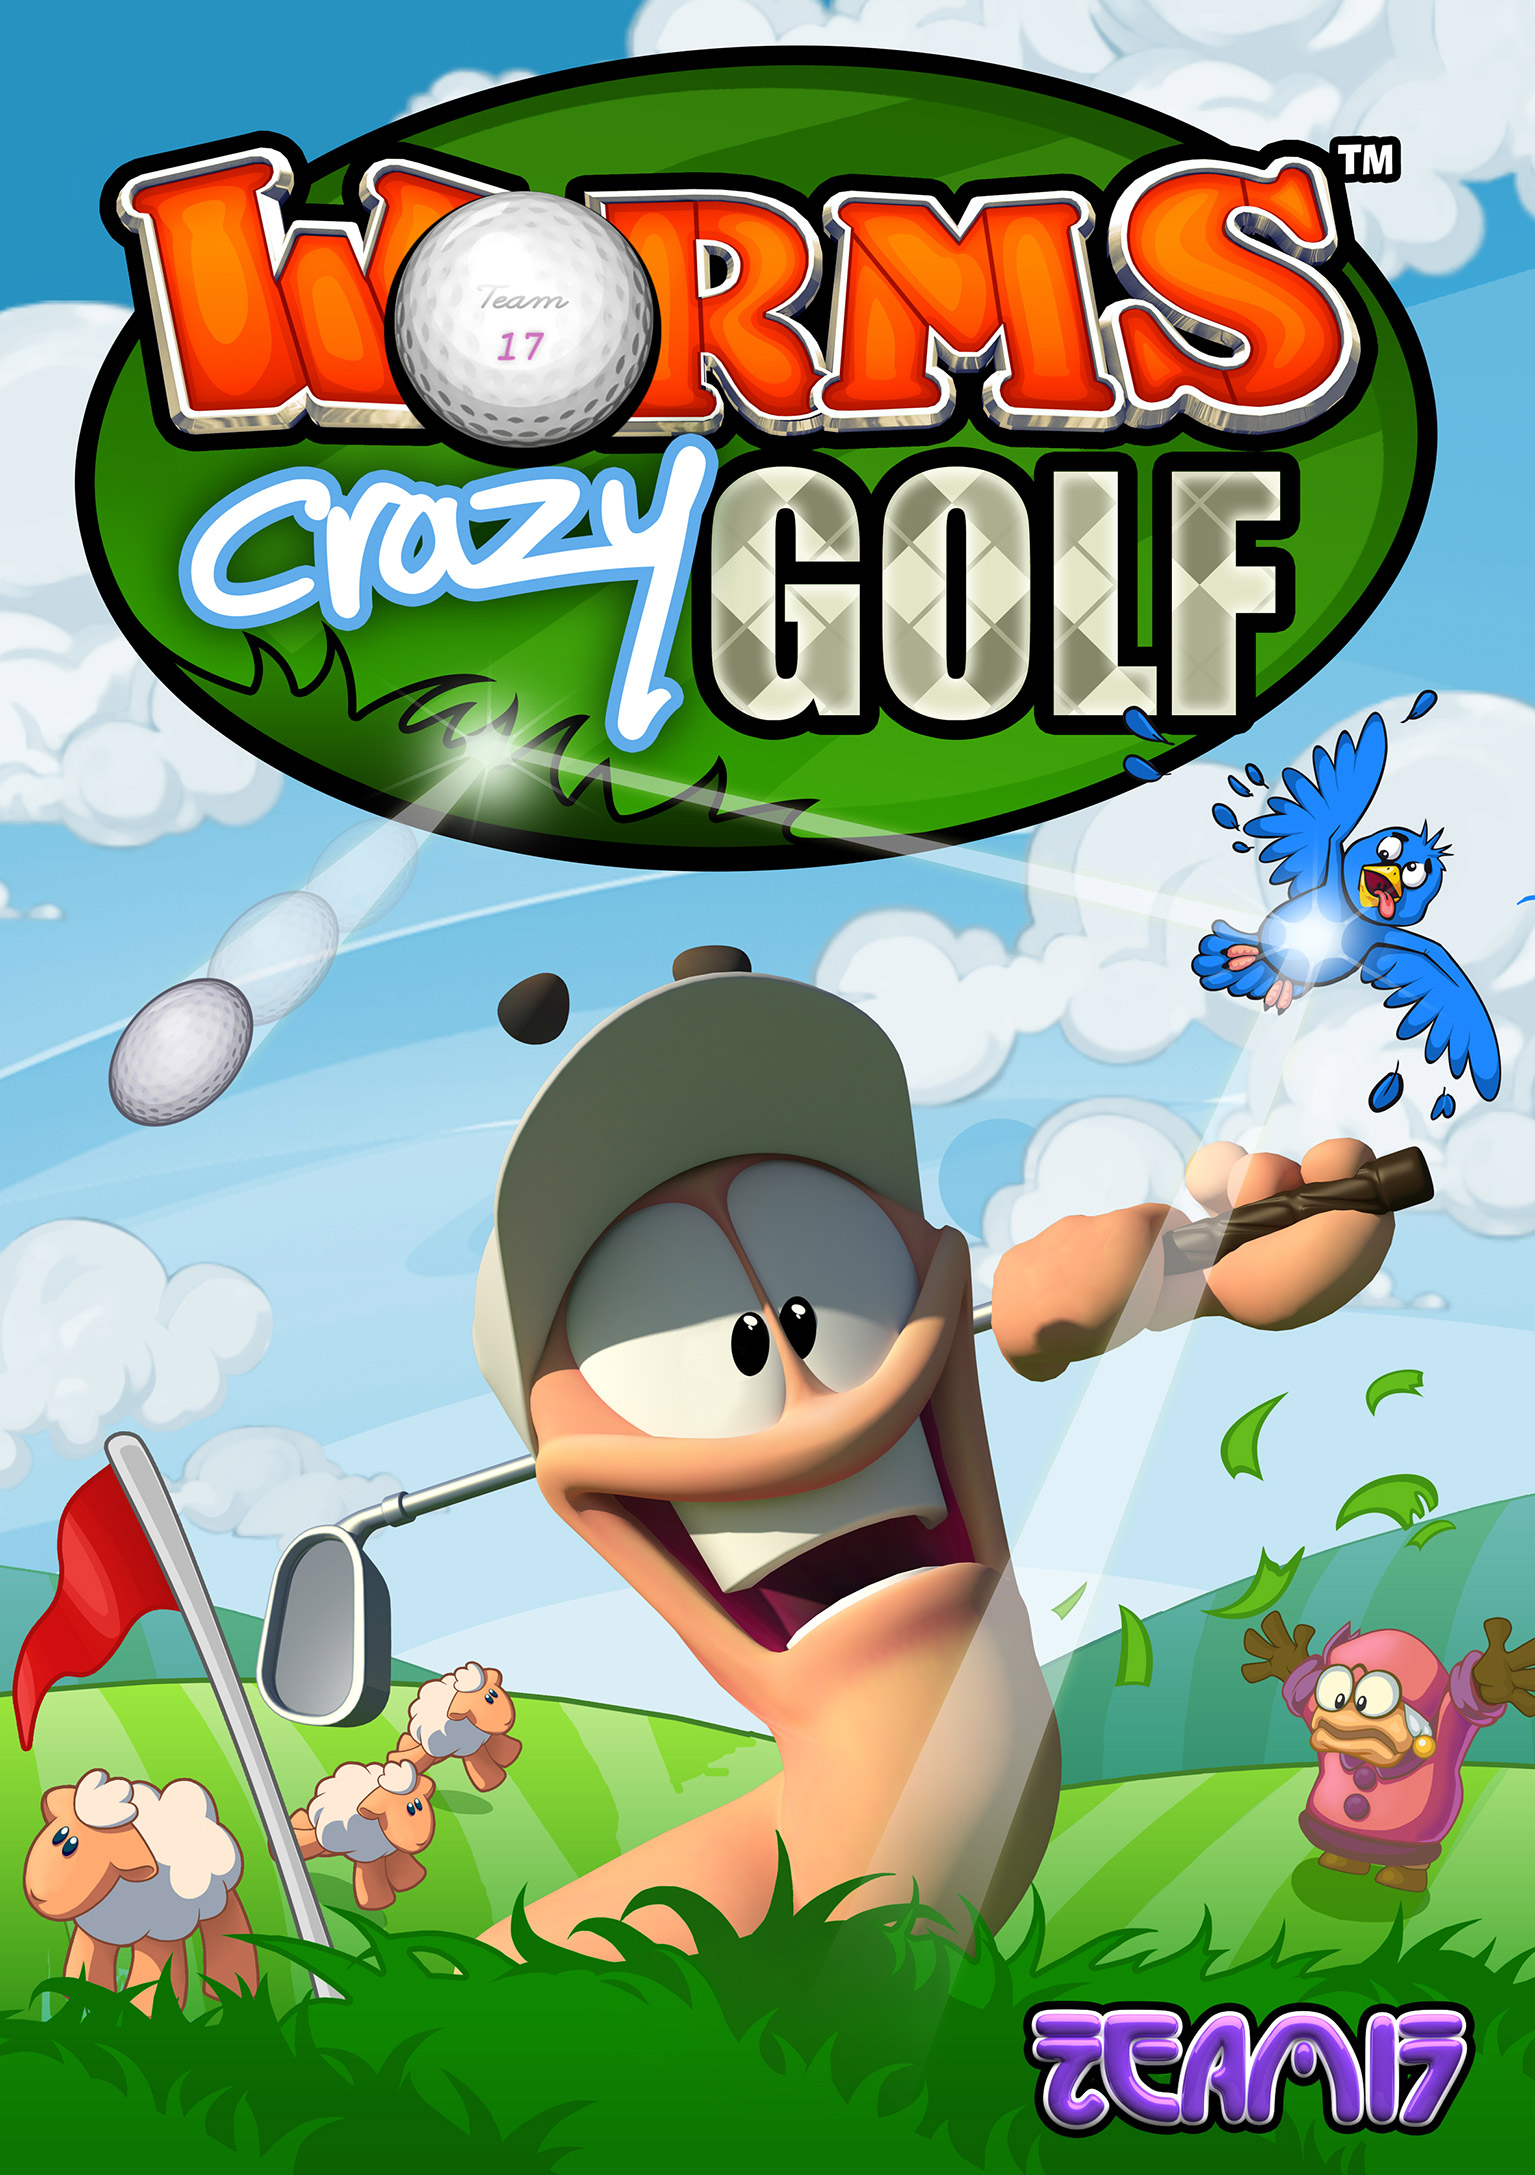 Worms Crazy Golf - predn DVD obal